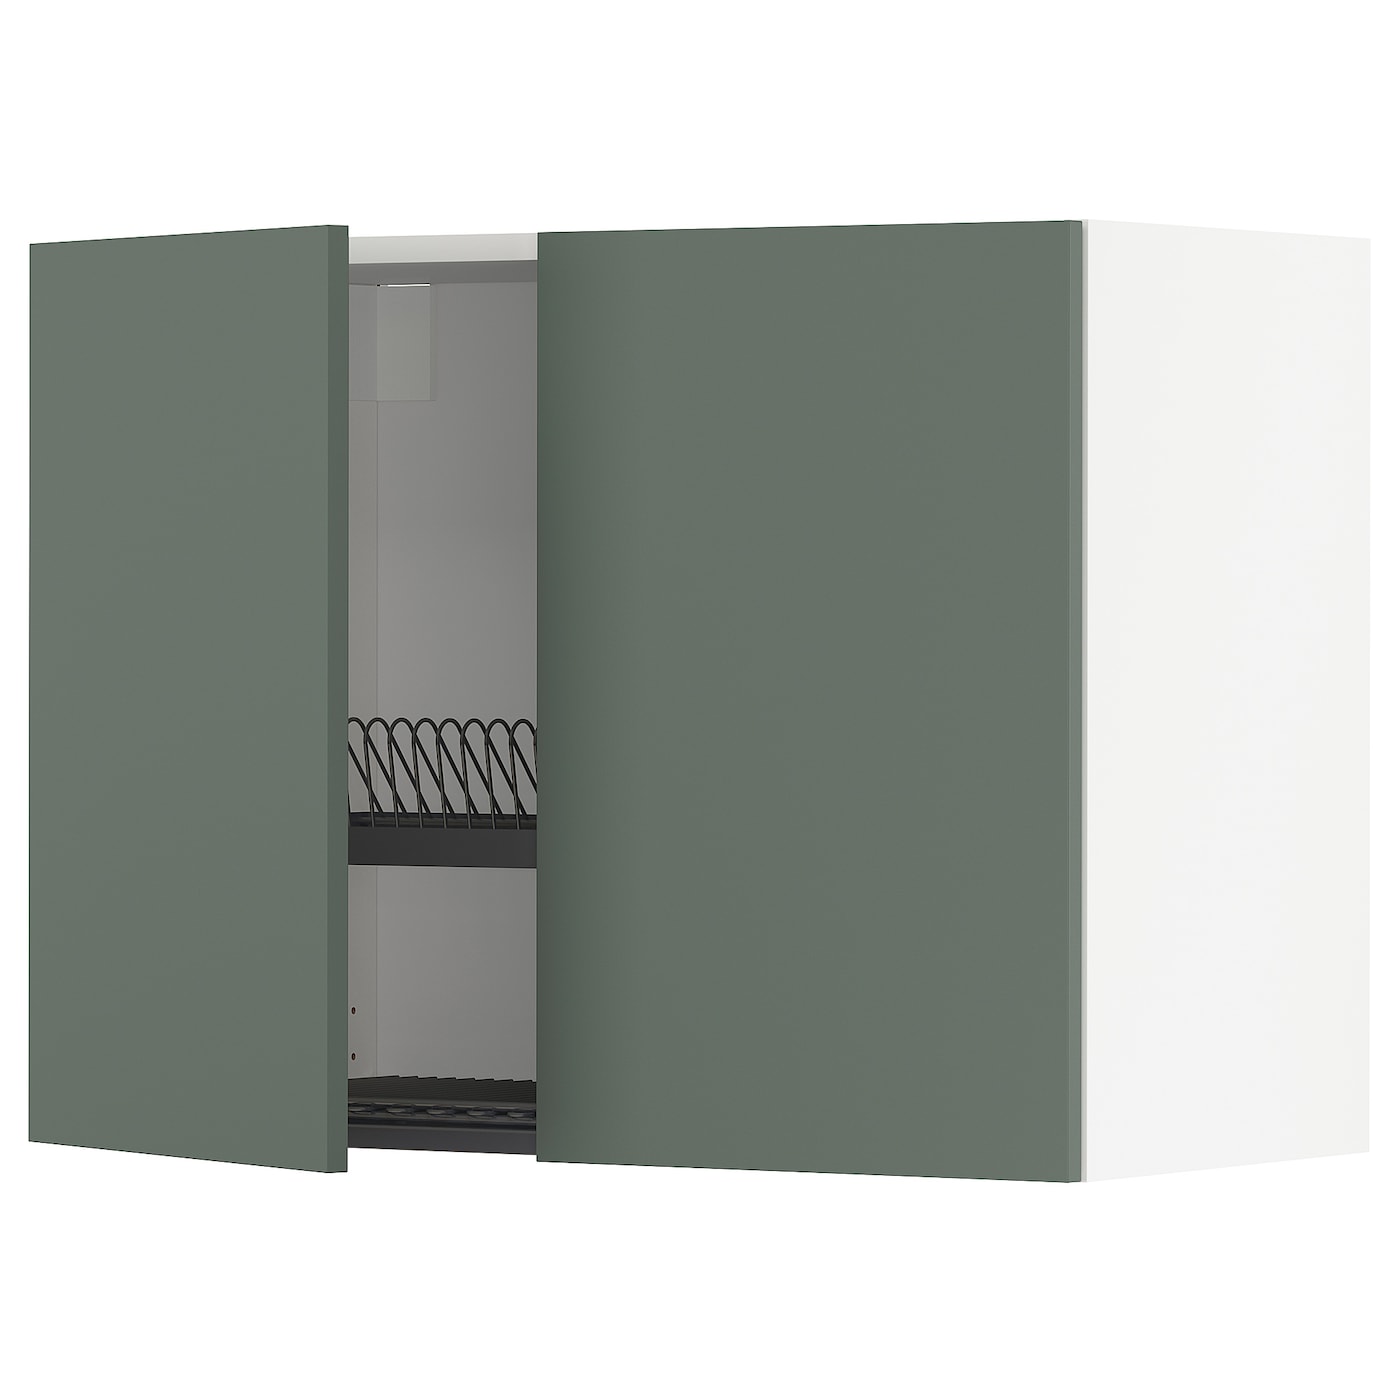 Навесной шкаф с сушилкой - METOD IKEA/ МЕТОД ИКЕА, 60х80 см, белый/темно-зеленый